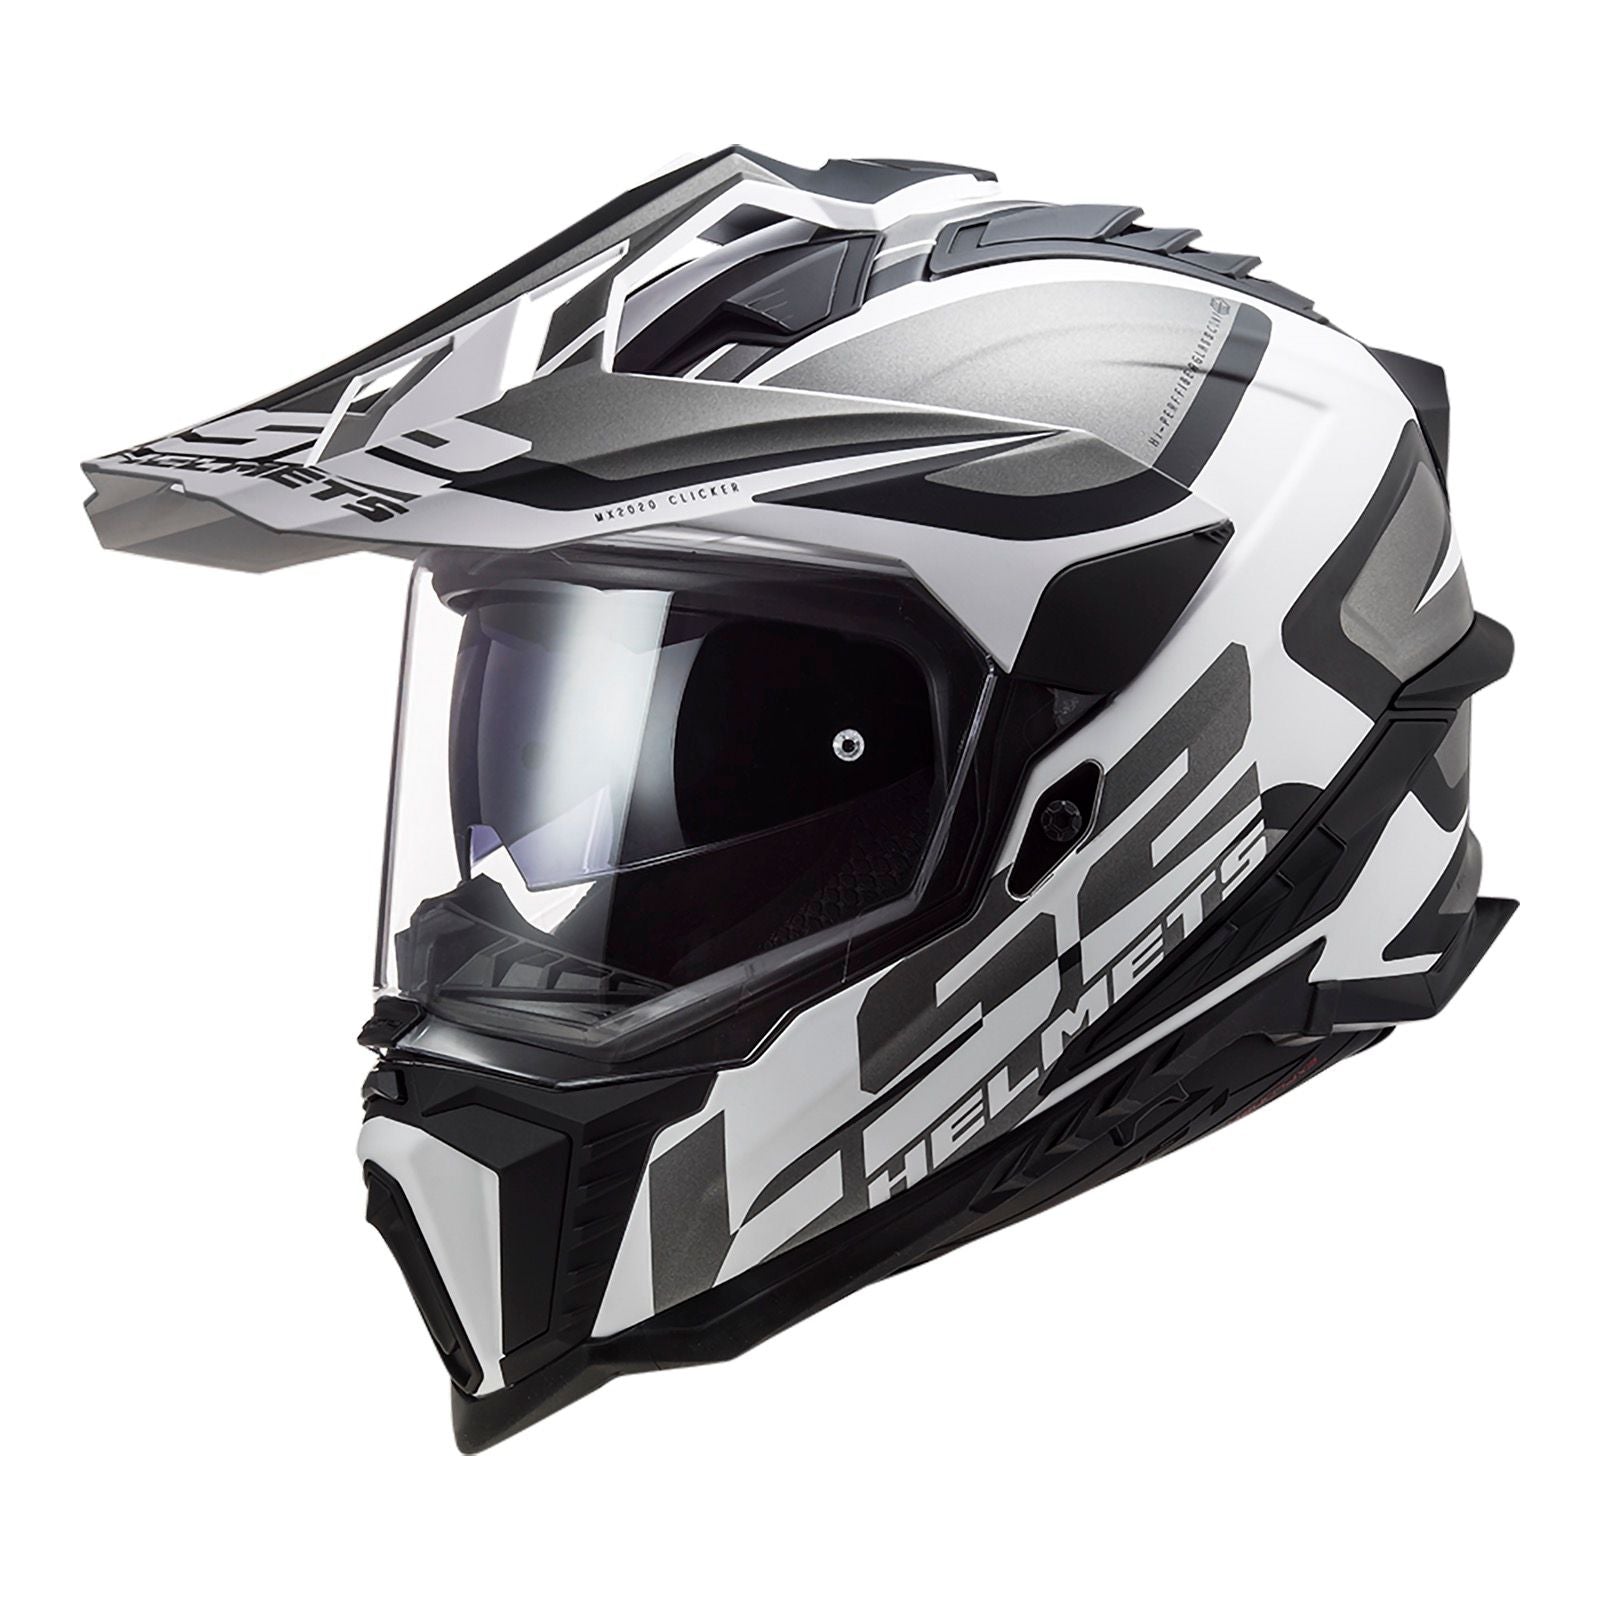 New LS2 Explorer Alter Helmet - Matte Black / White (2XL) #LS2MX701ALTMBW2XL